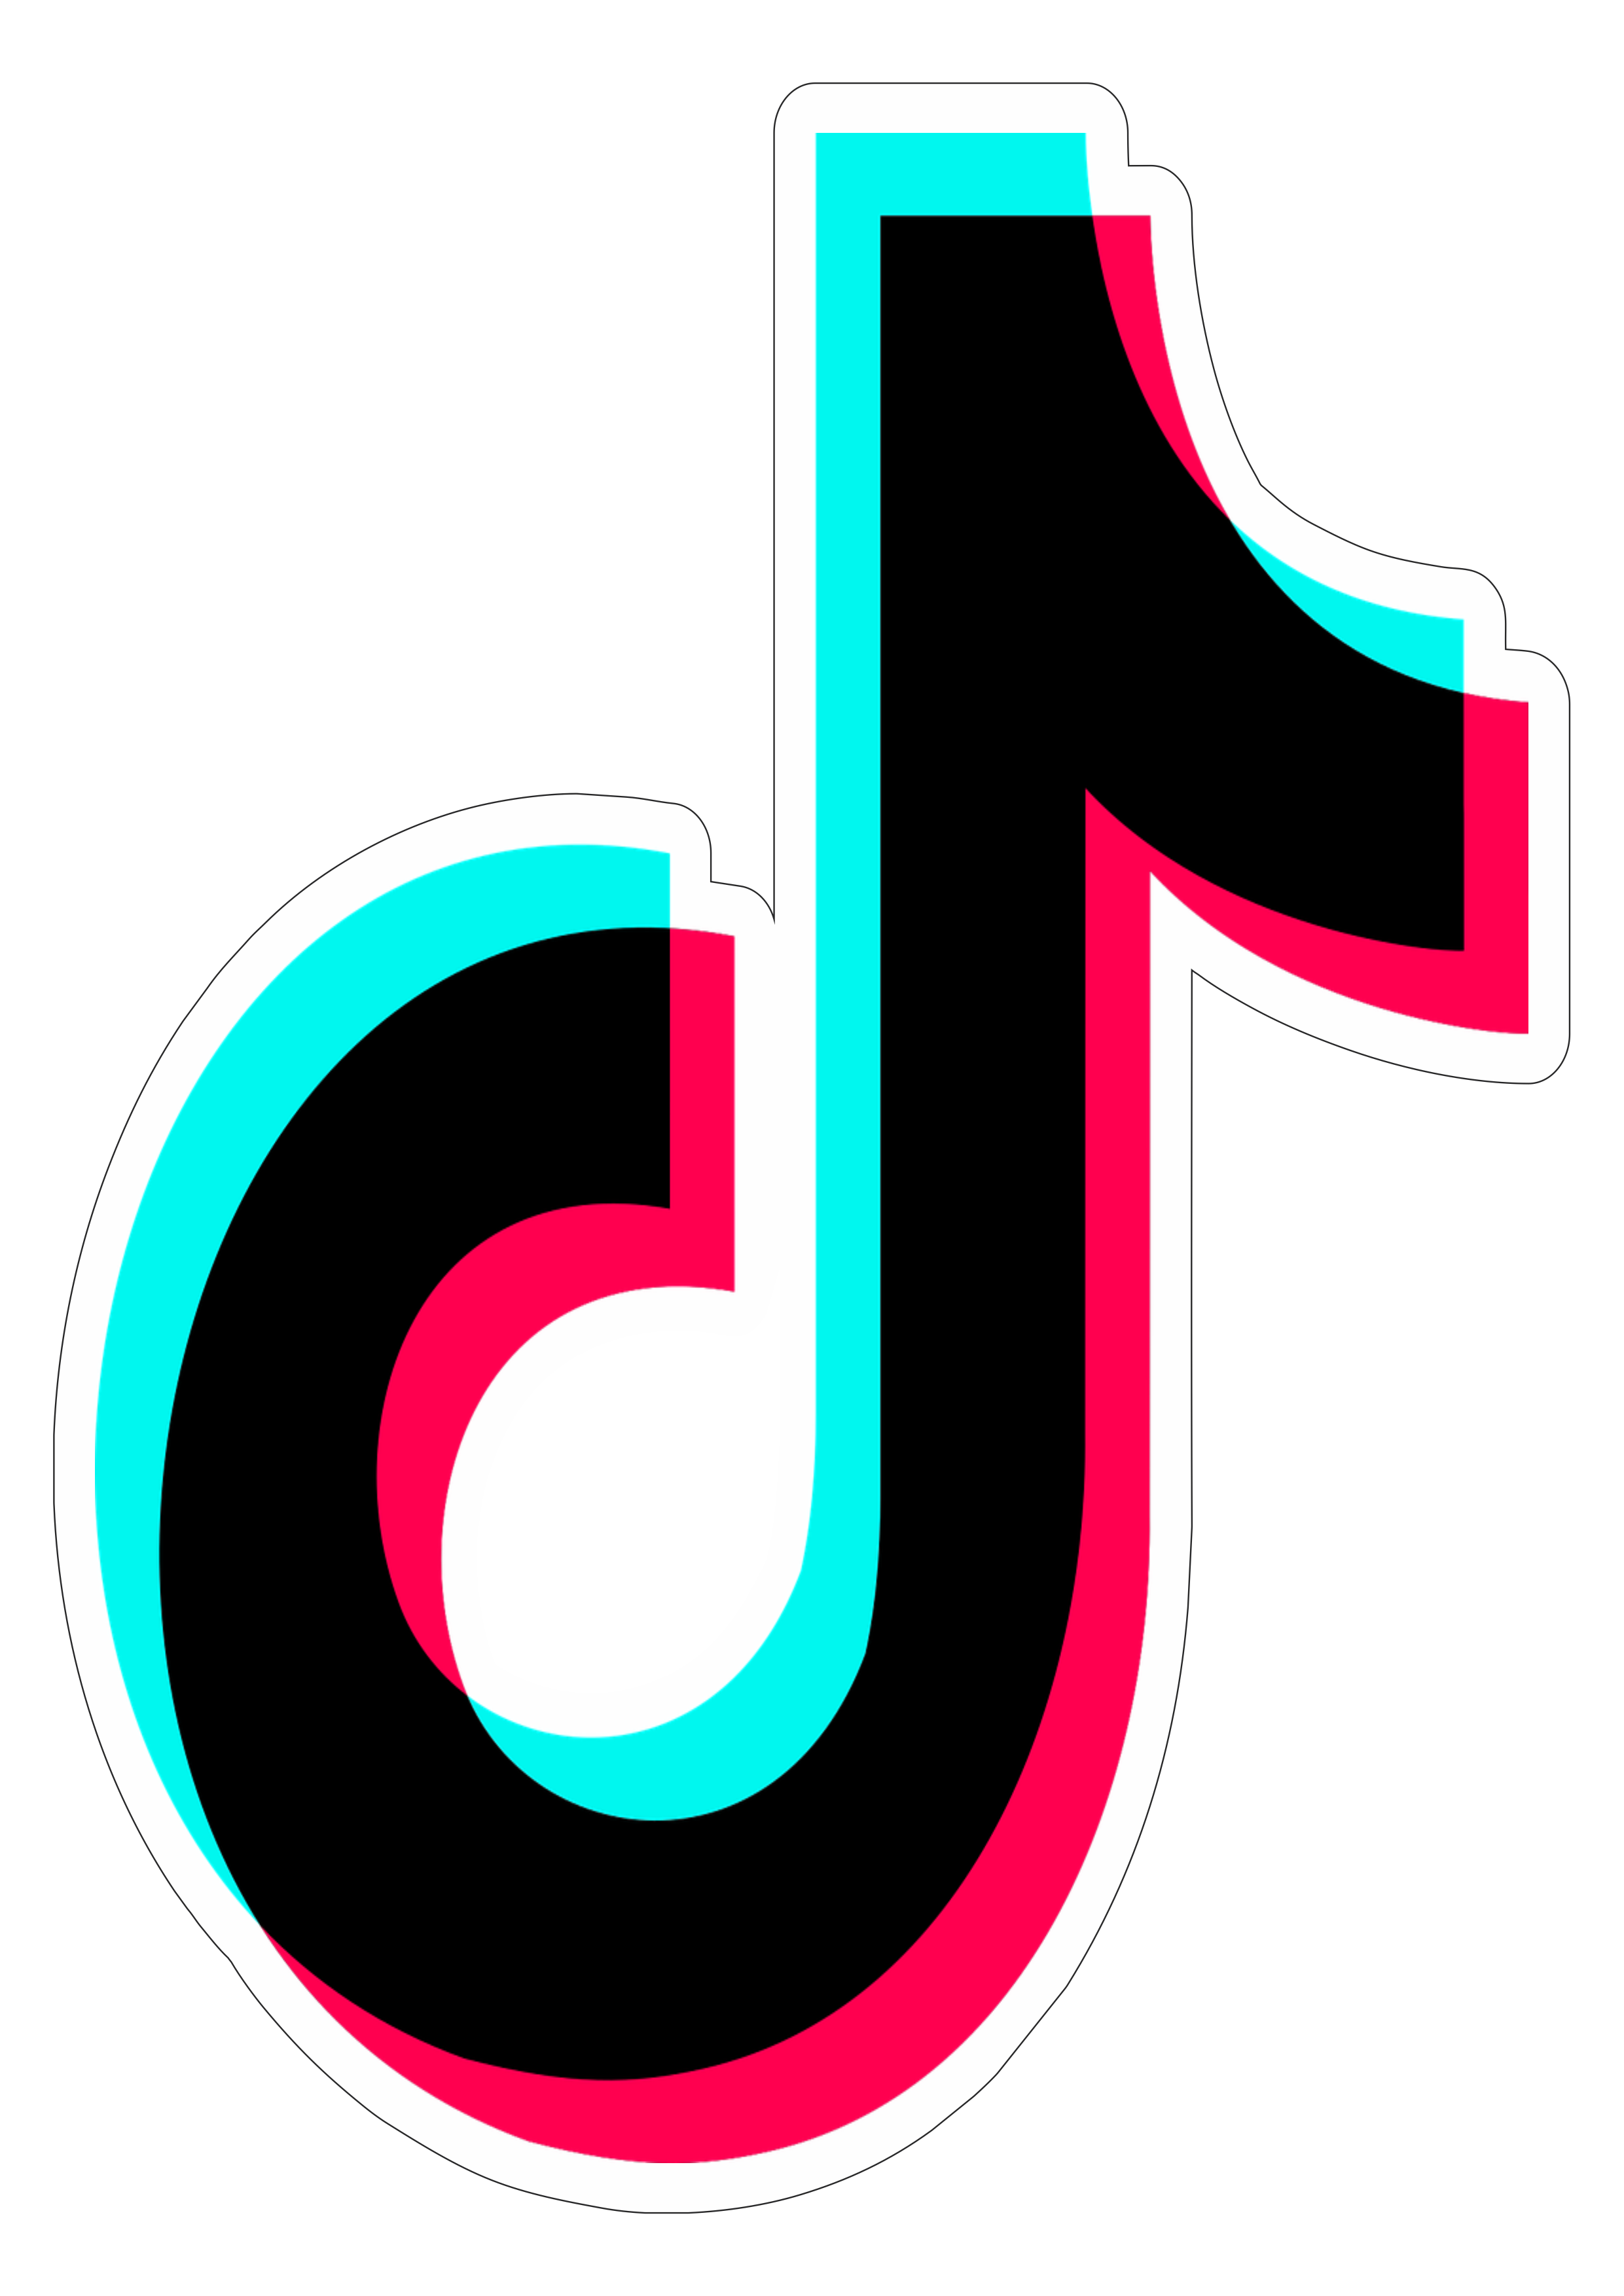 Tiktok simbolo logo aplicativo recorte contorno png